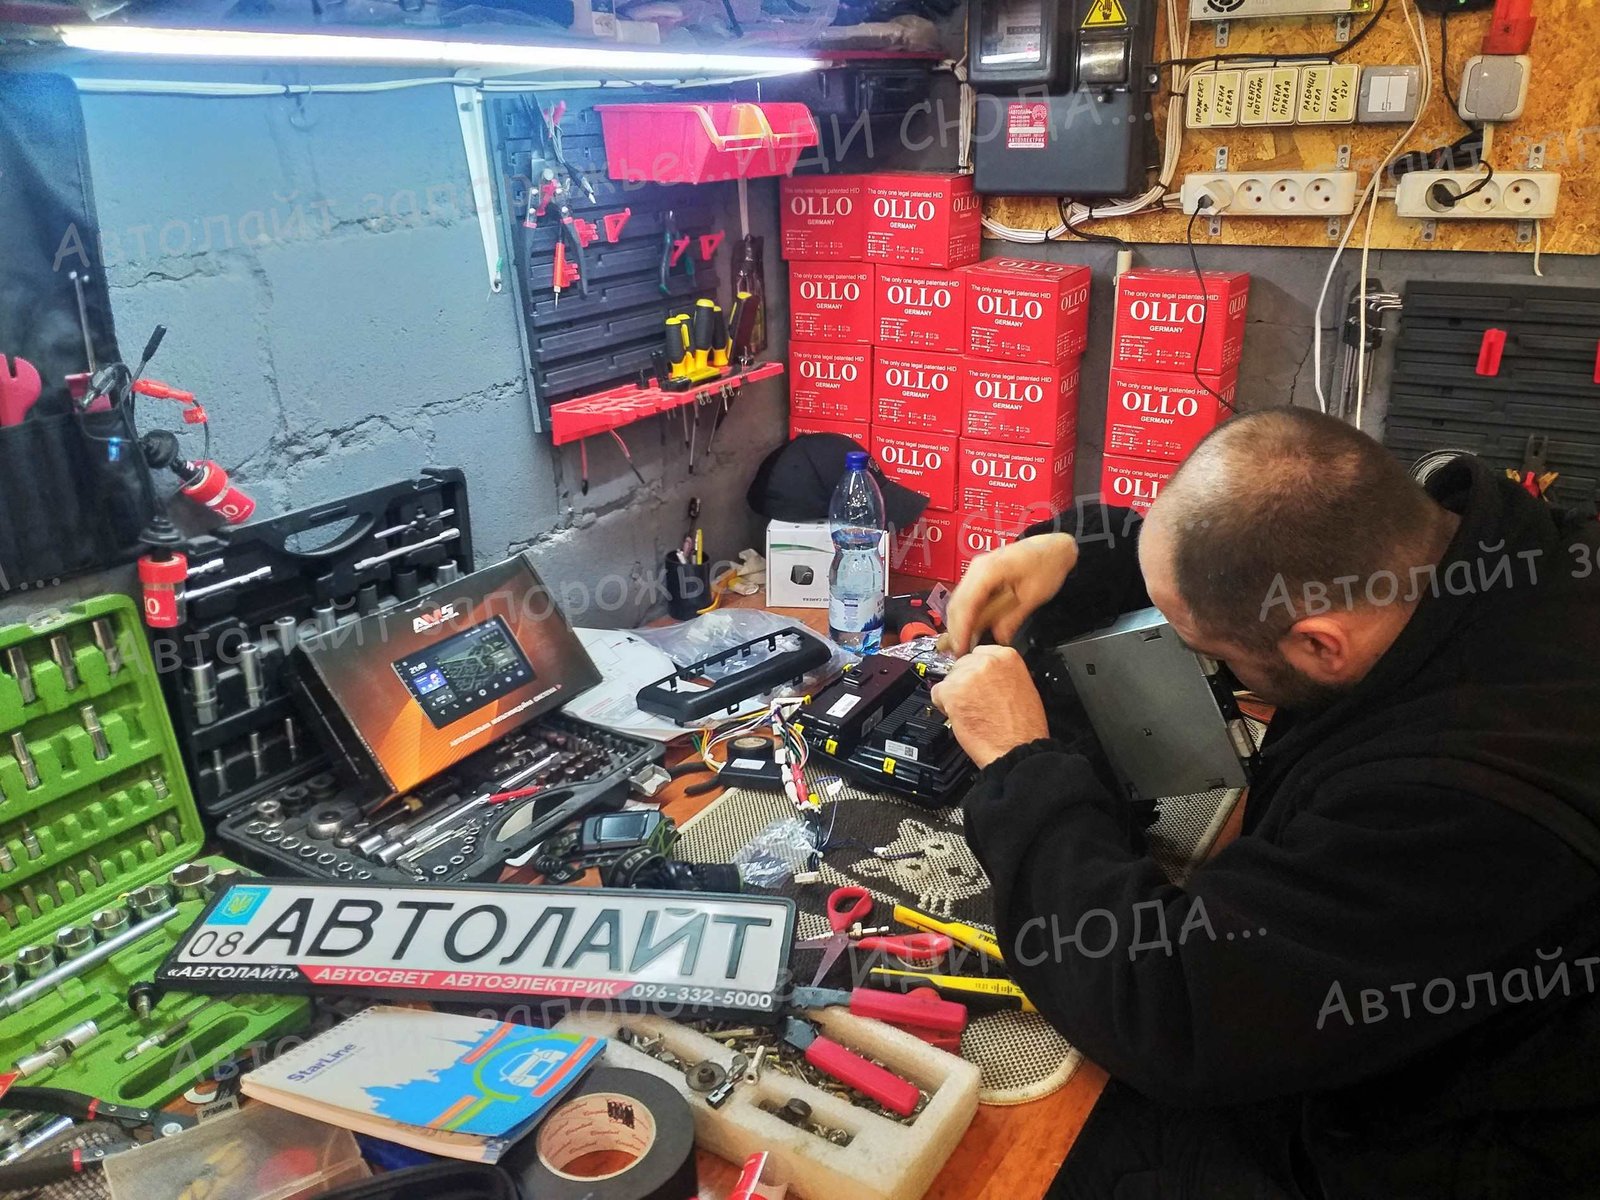 Услуги автоэлектрика в Запорожье. 8 🚩AVTOLIGHT🚩КАЧЕСТВО 💯‼ студия "Автолайт" Качественный автосвет в Запорожье